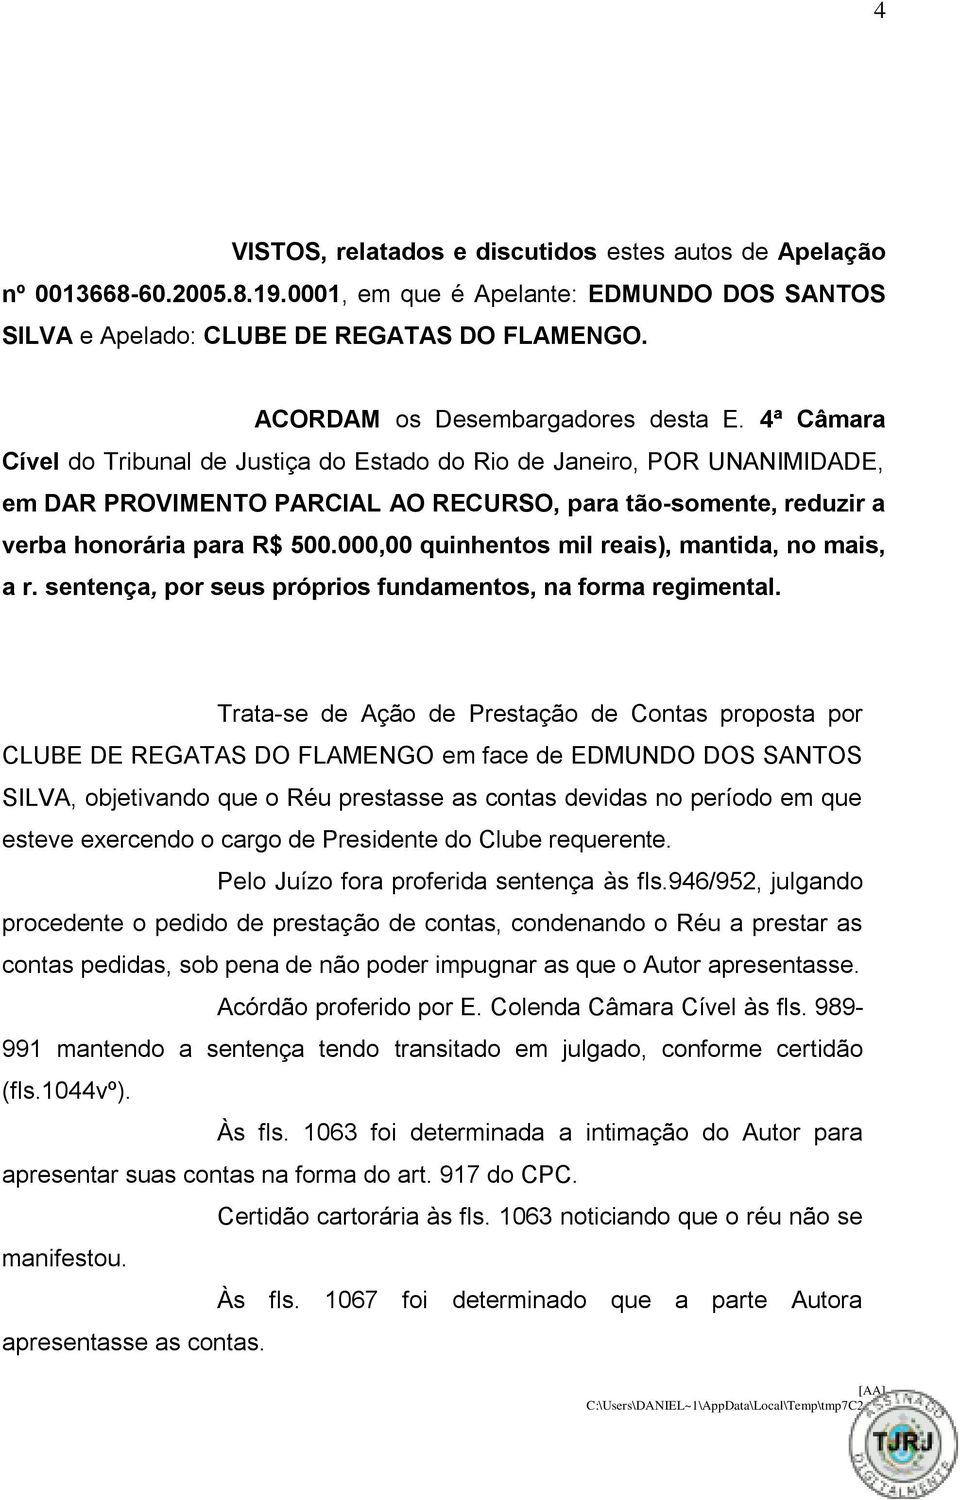 4ª Câmara Cível do Tribunal de Justiça do Estado do Rio de Janeiro, POR UNANIMIDADE, em DAR PROVIMENTO PARCIAL AO RECURSO, para tão-somente, reduzir a verba honorária para R$ 500.